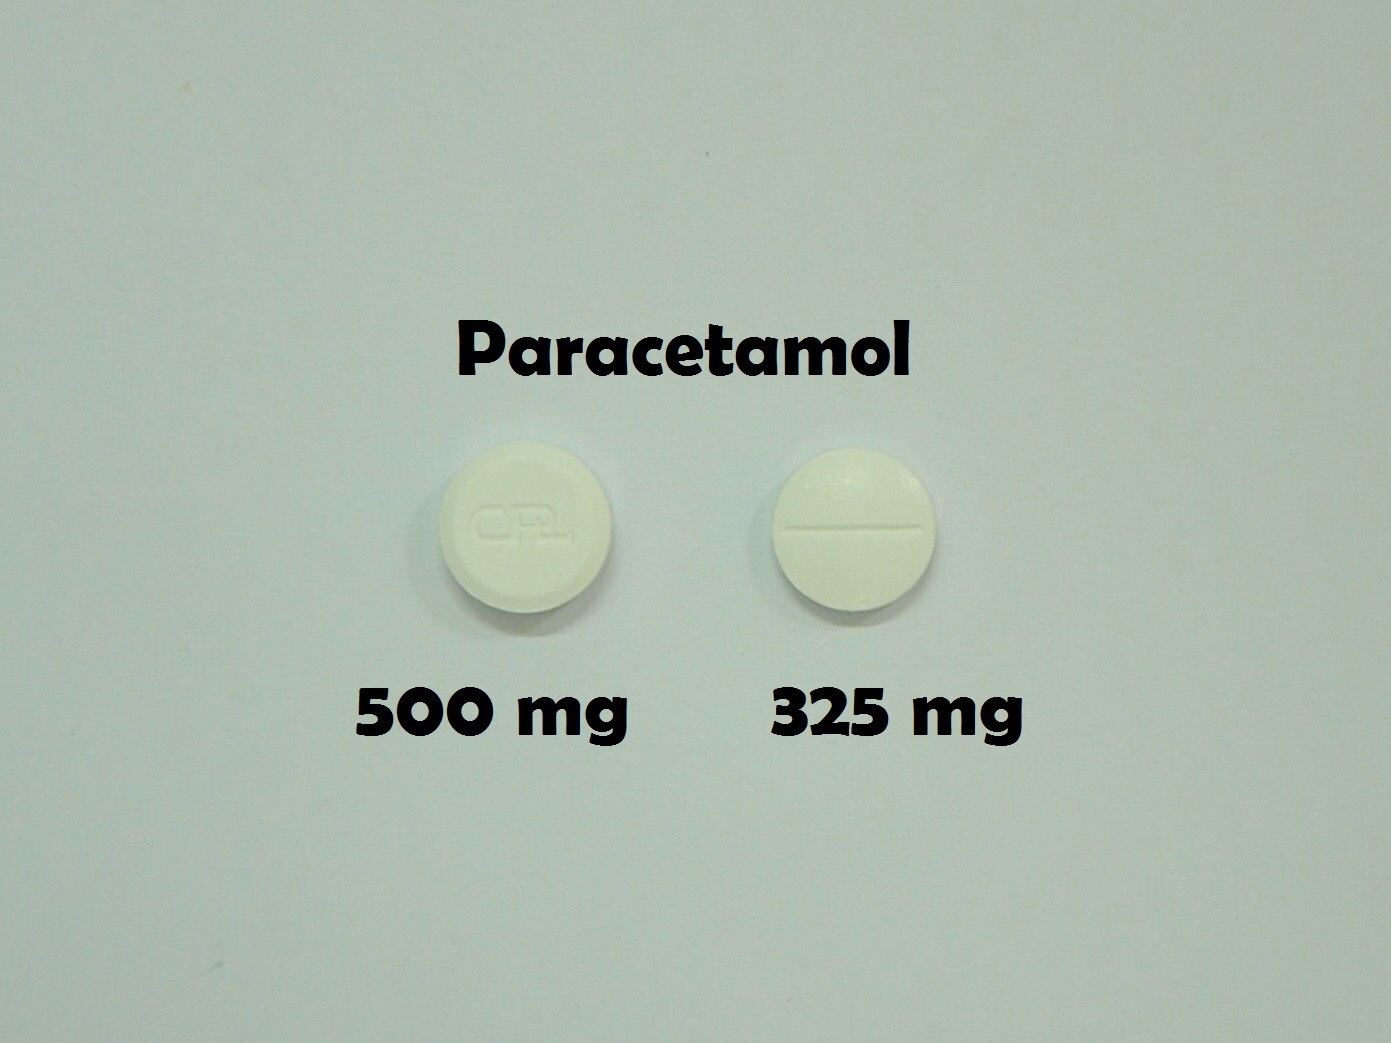 ยาที่มีหลายความแรง : Paracetamol 325 mg และ 500 mg